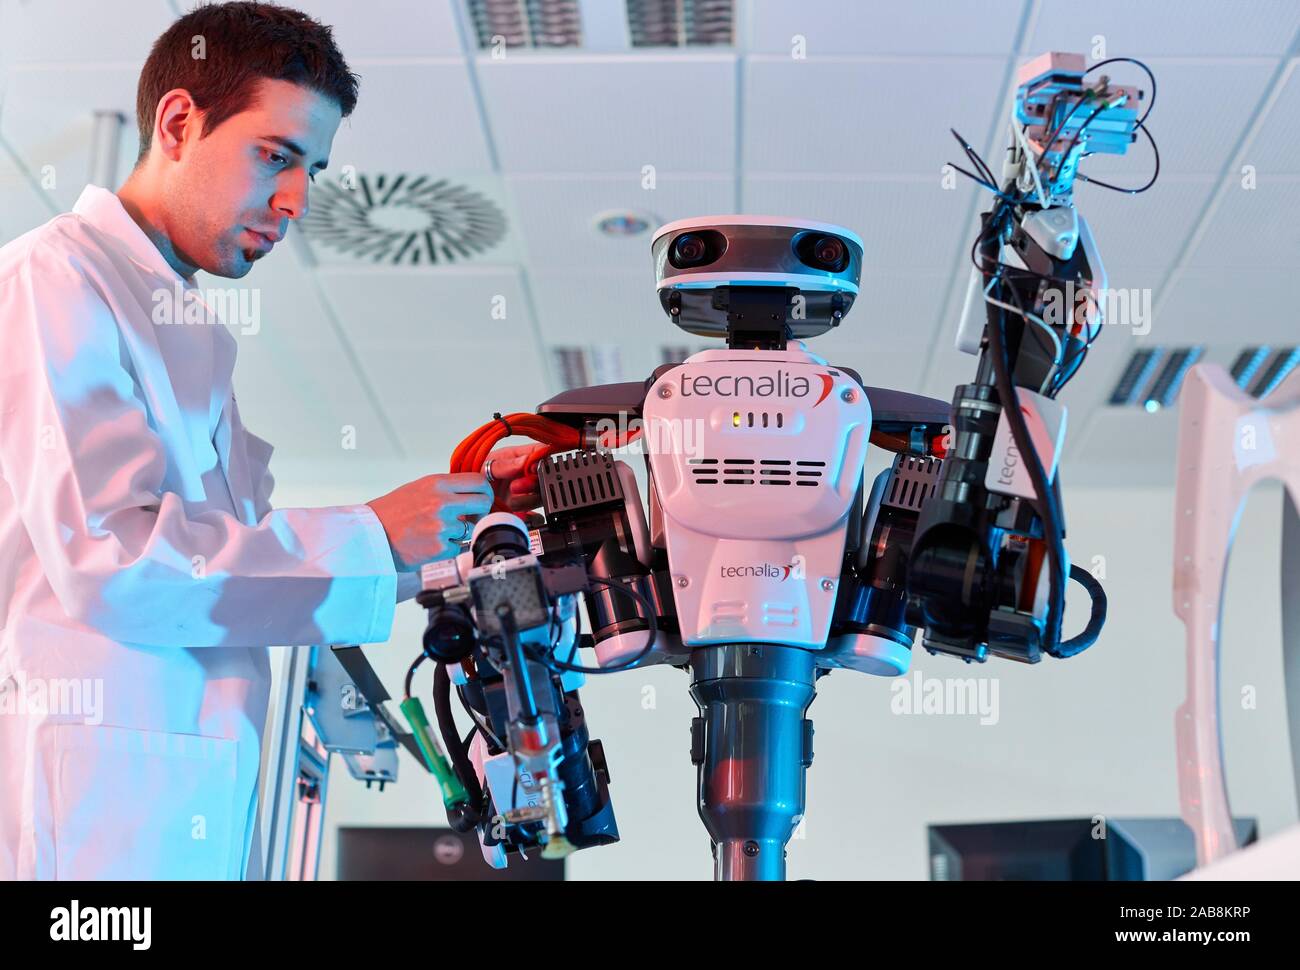 Autonomia di robot per la produzione flessibile e collaborativa, robotica avanzata unità di fabbricazione, Technology Center, Tecnalia Ricerca & Innovazione, Foto Stock